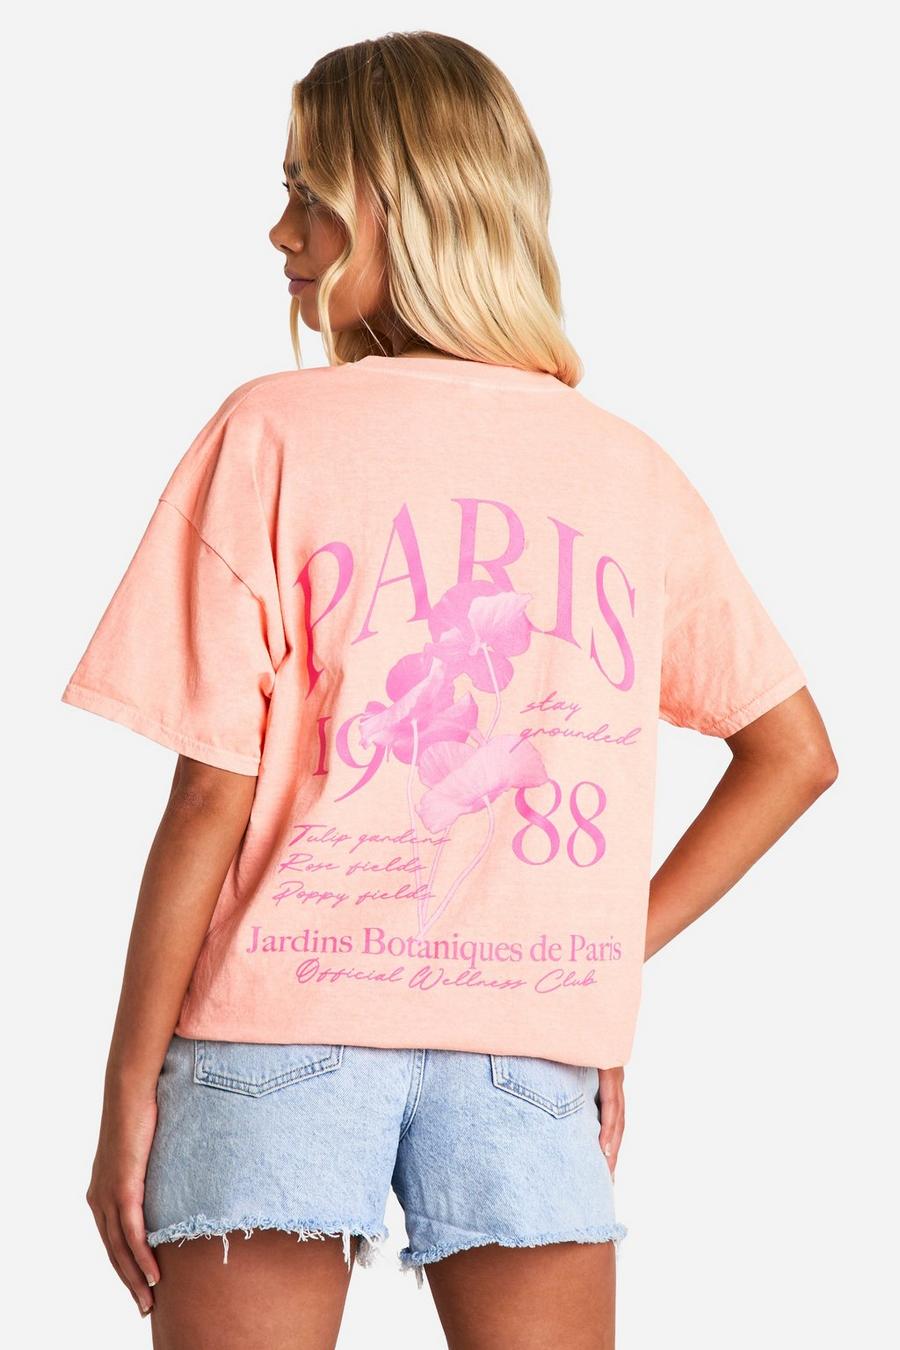 Camiseta con estampado de Paris en la espalda, Pink